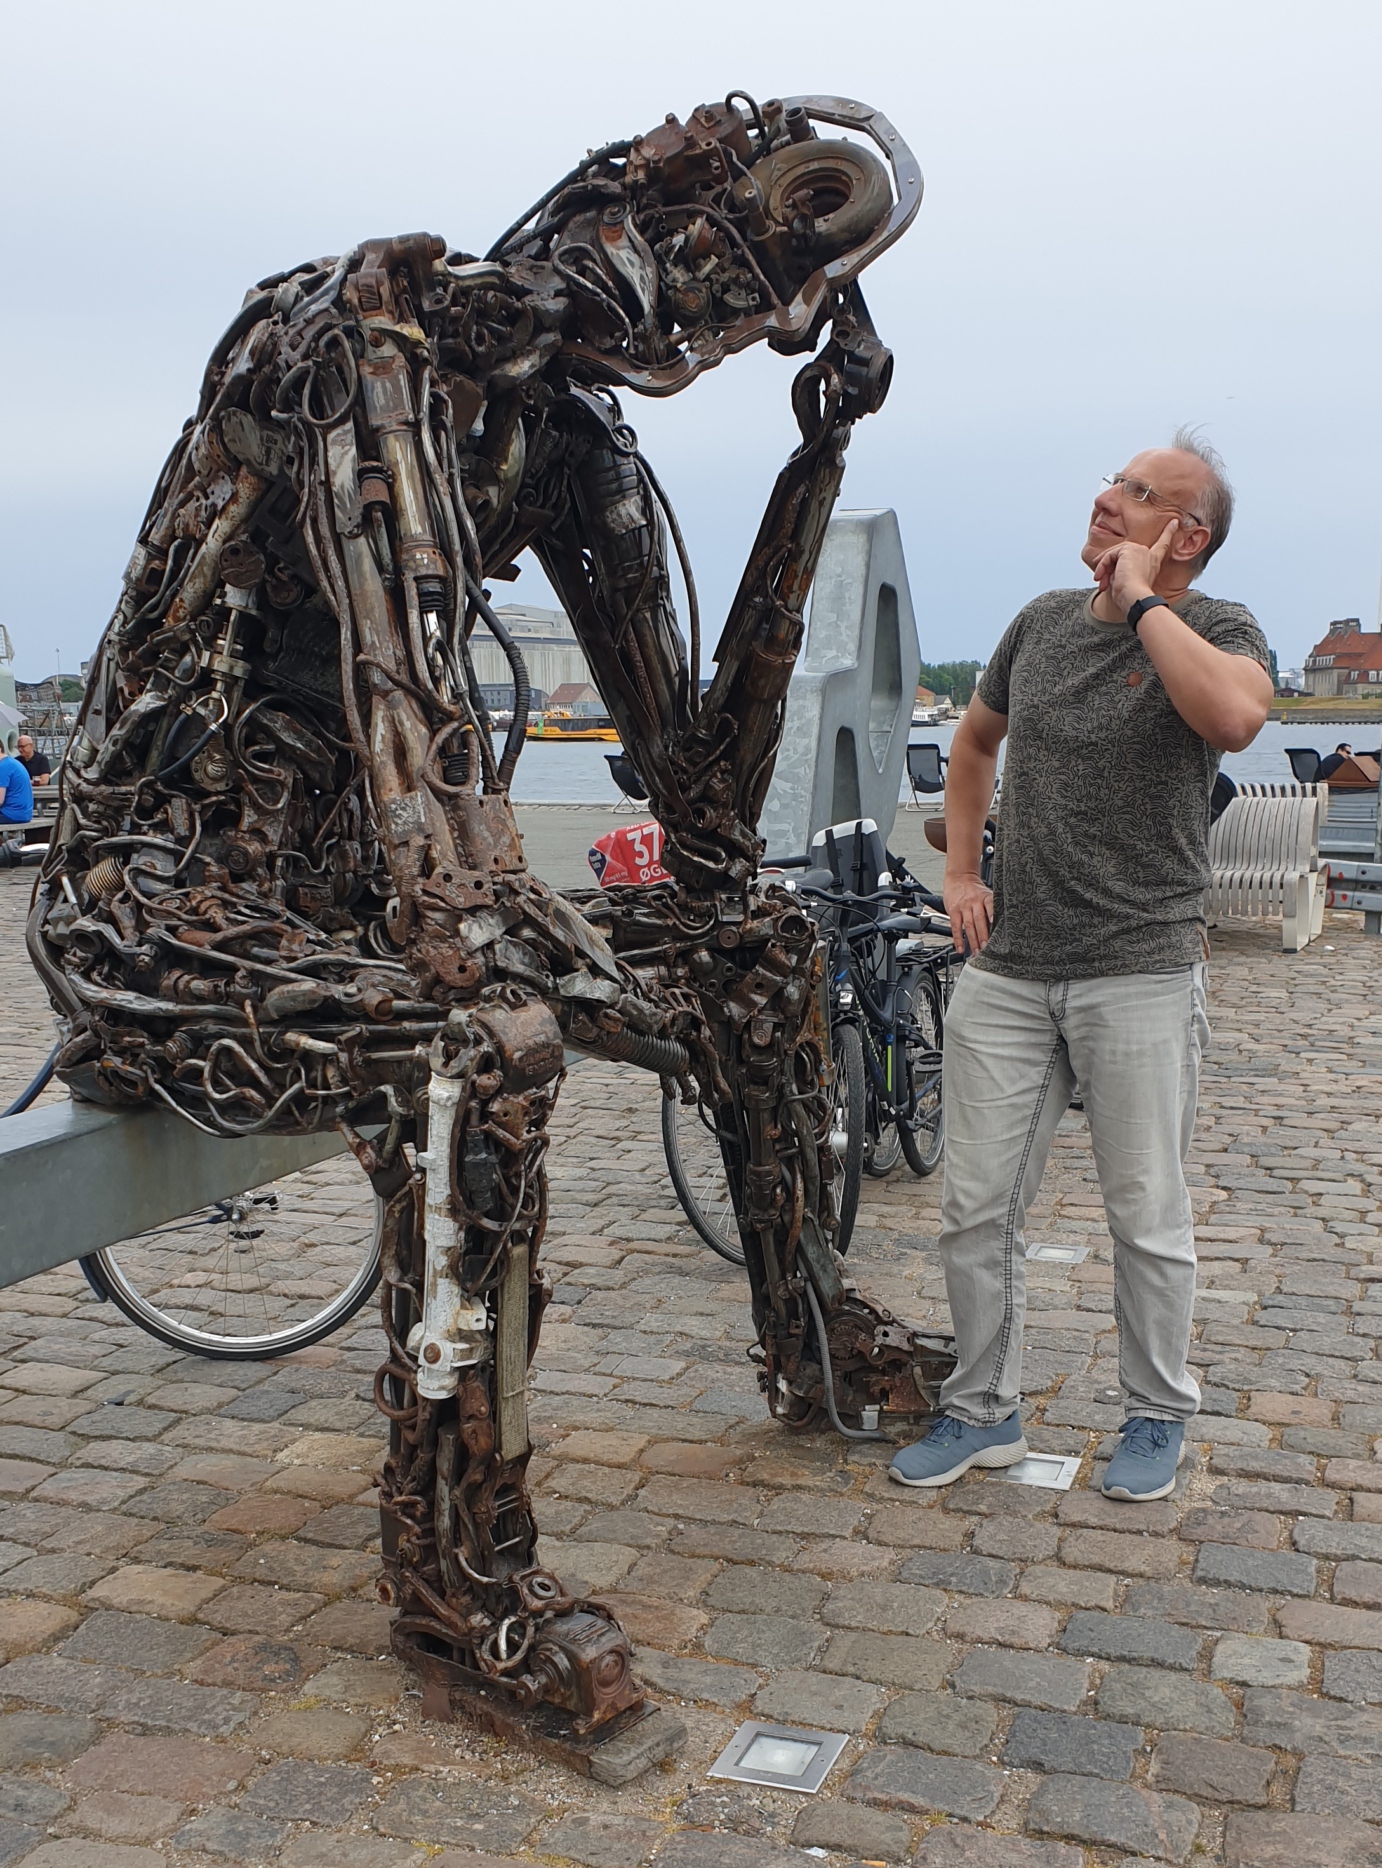 Das Foto zeigt mich neben der Skulptur "Zinkglobal" am Hafen von Kopenhagen. Die Figur wurde aus alten Maschinenteilen kreiert und zeigt einen nachdenkenen sitzenden Menschen, der seinen Kopf mit der Hand stützt.